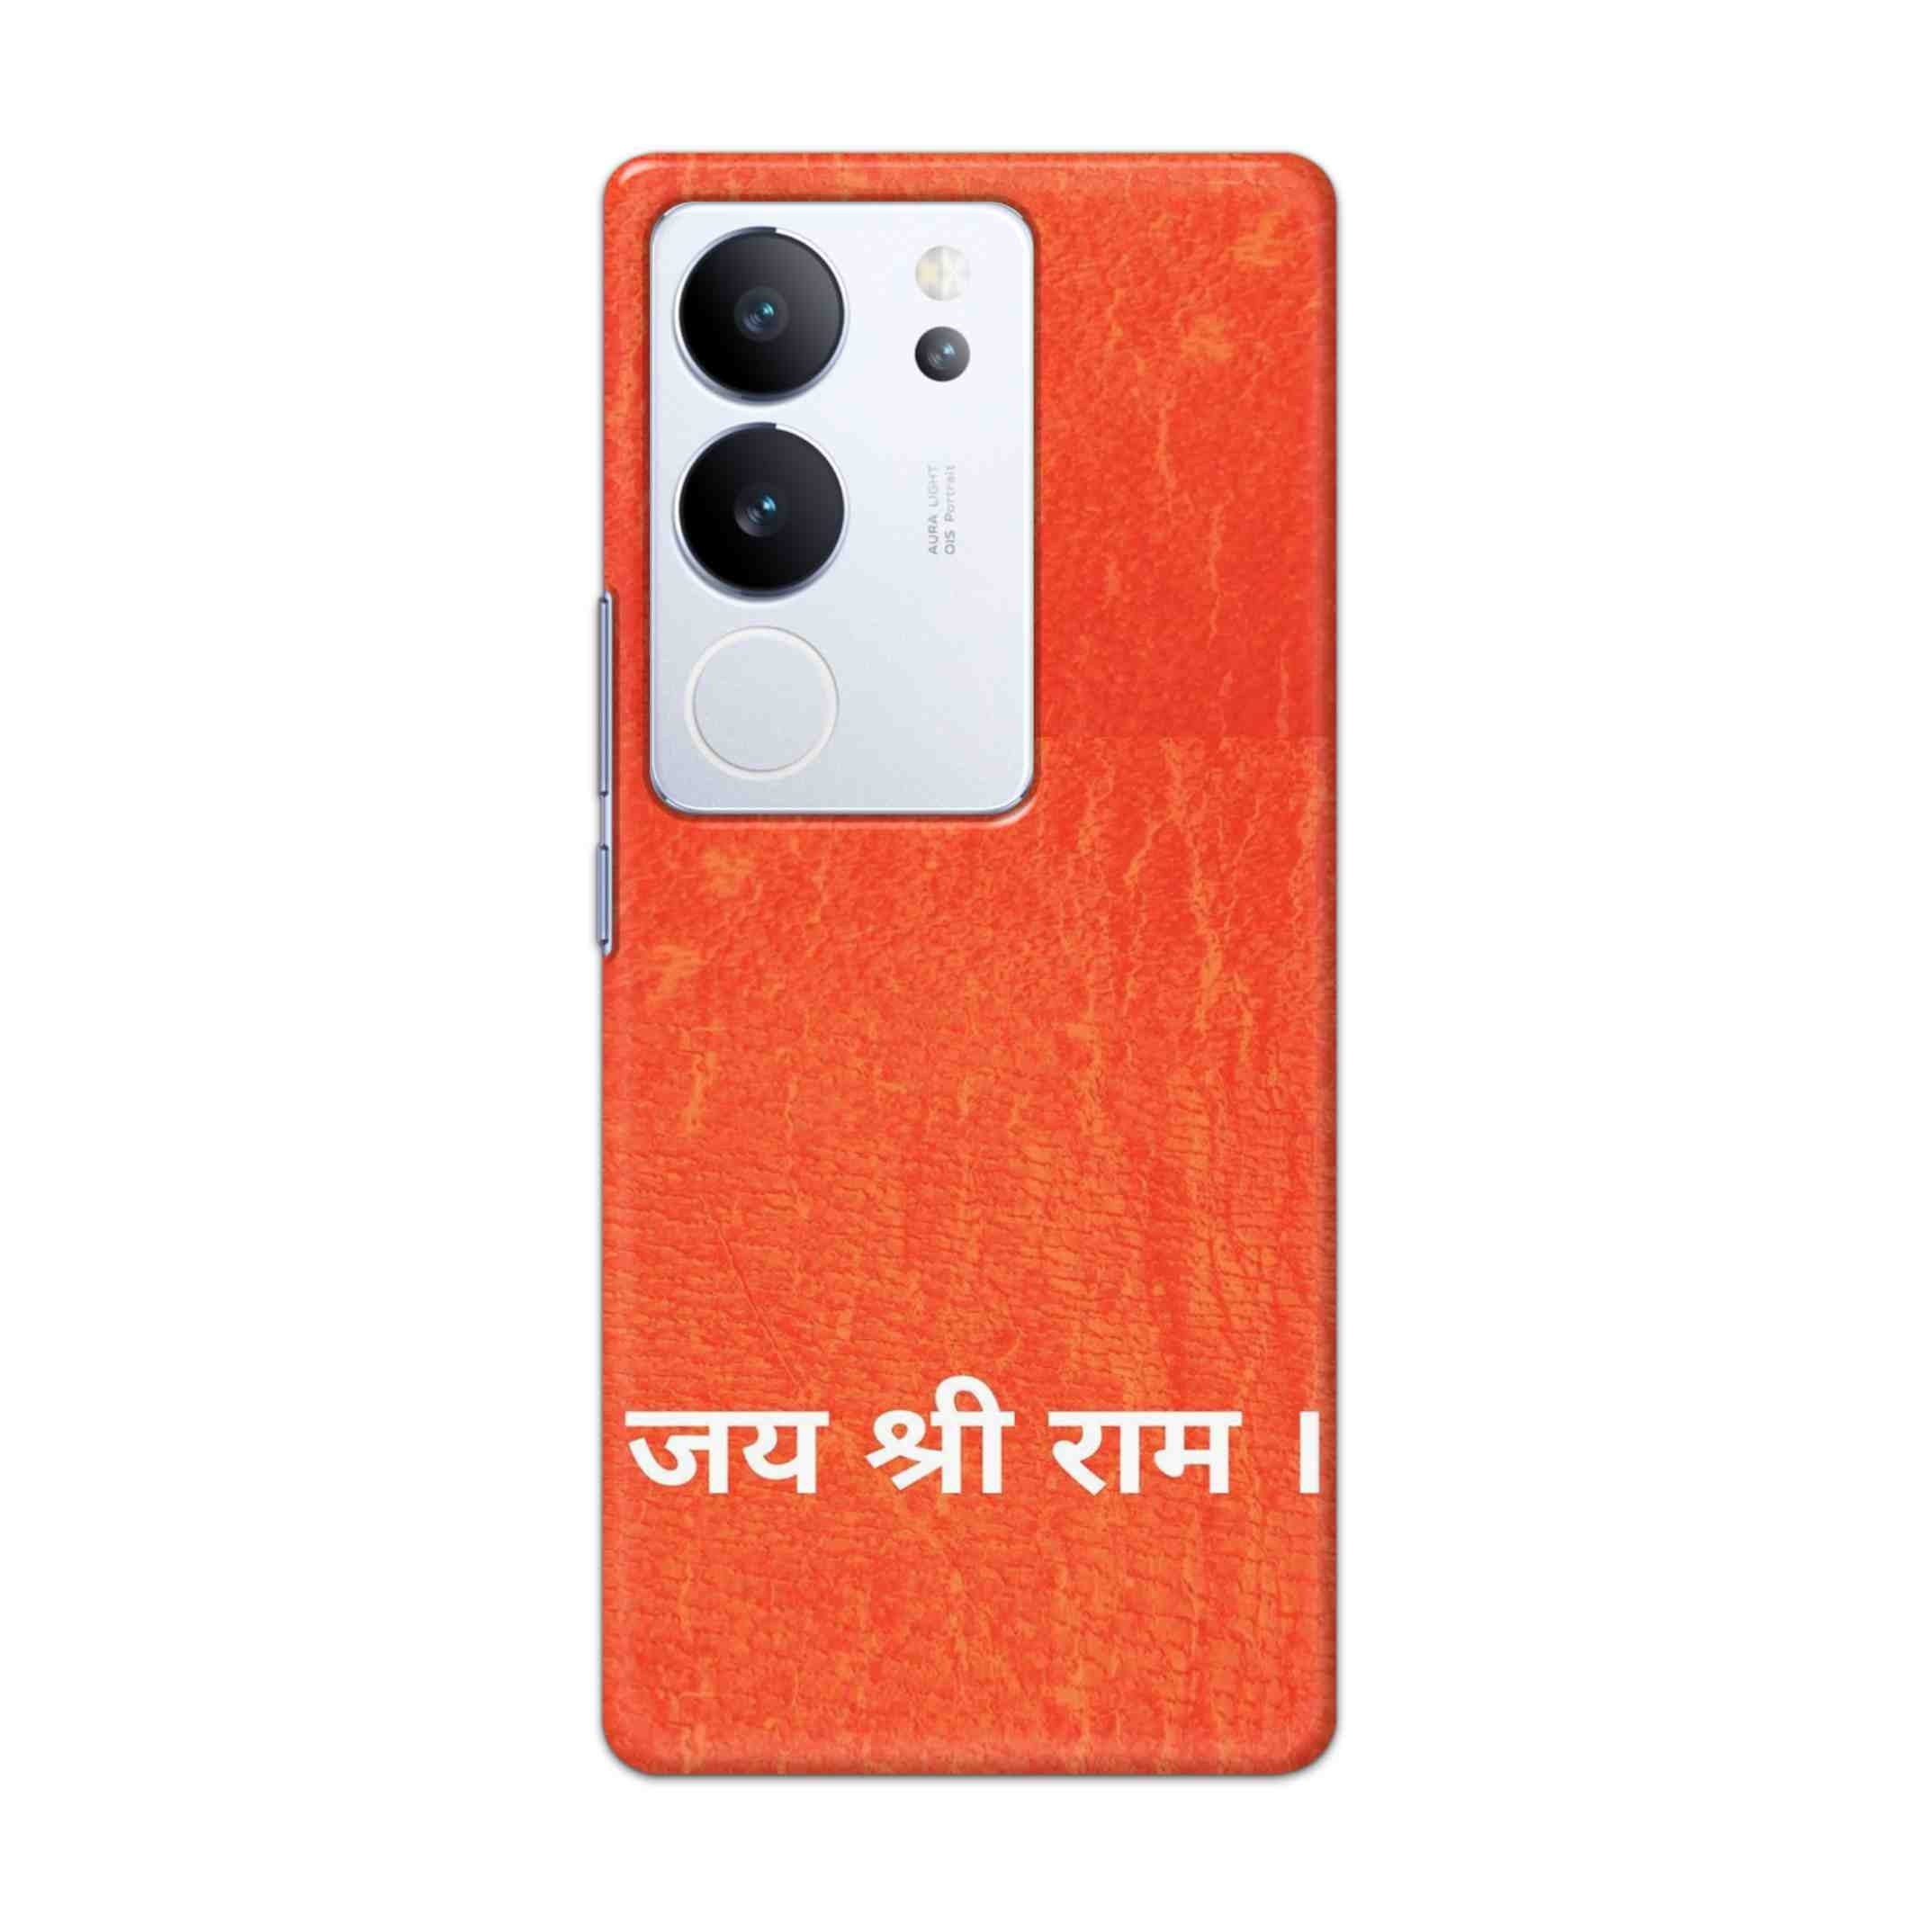 Buy Jai Shree Ram Hard Back Mobile Phone Case/Cover For Vivo V29 / V29 Pro Online